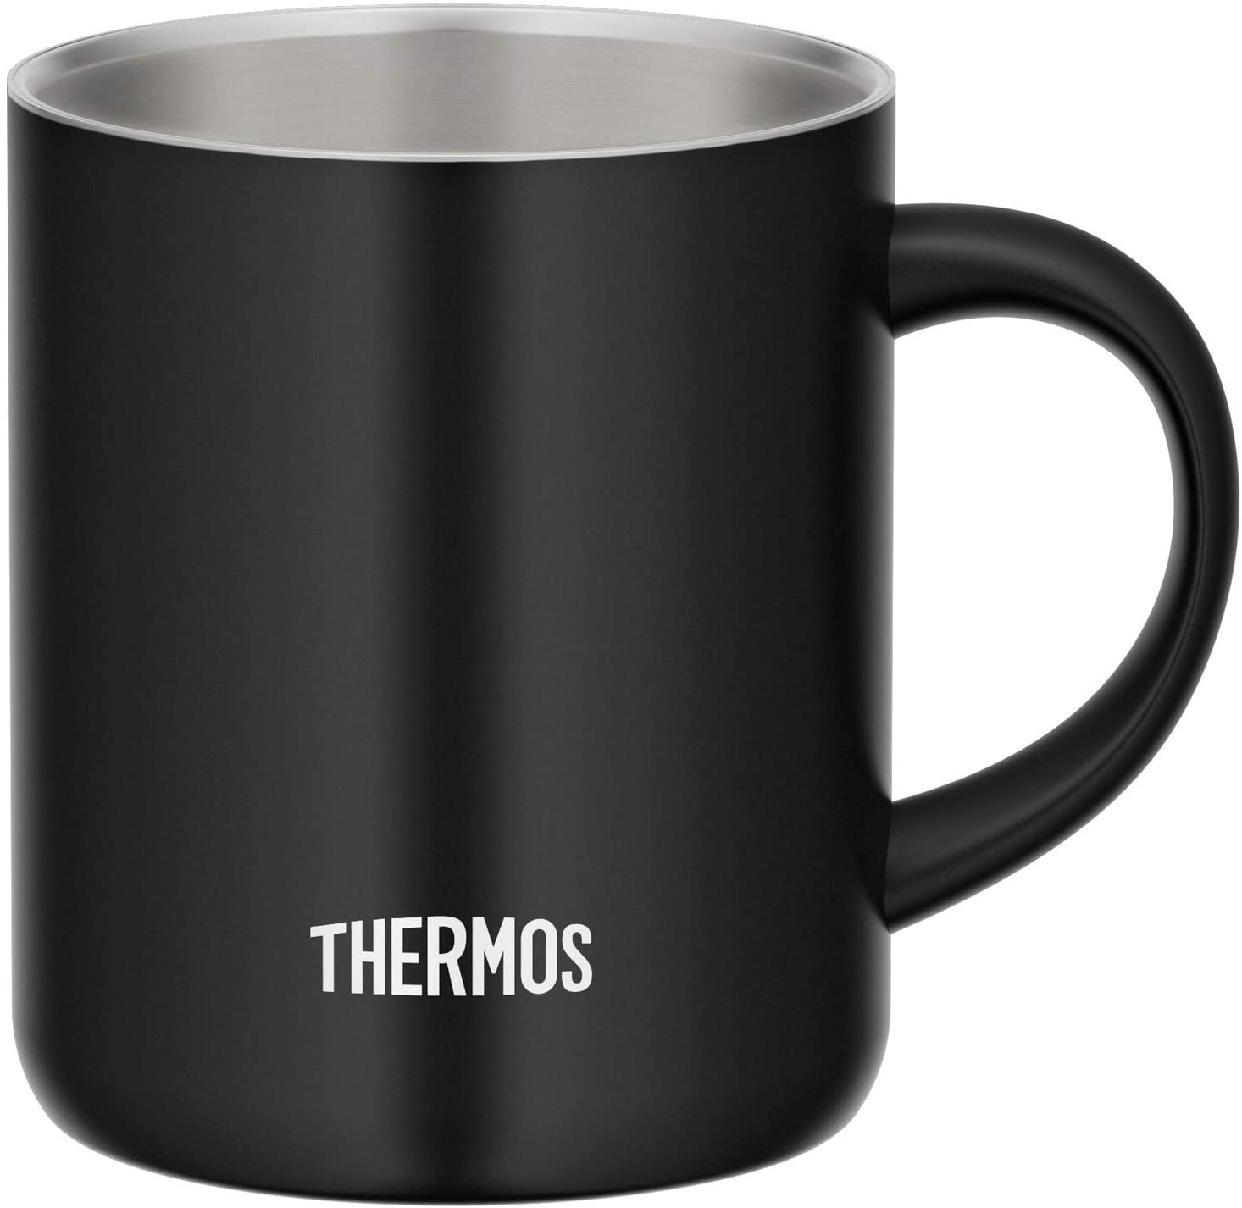 THERMOS(サーモス) 真空断熱マグカップ JDG-350の商品画像2 